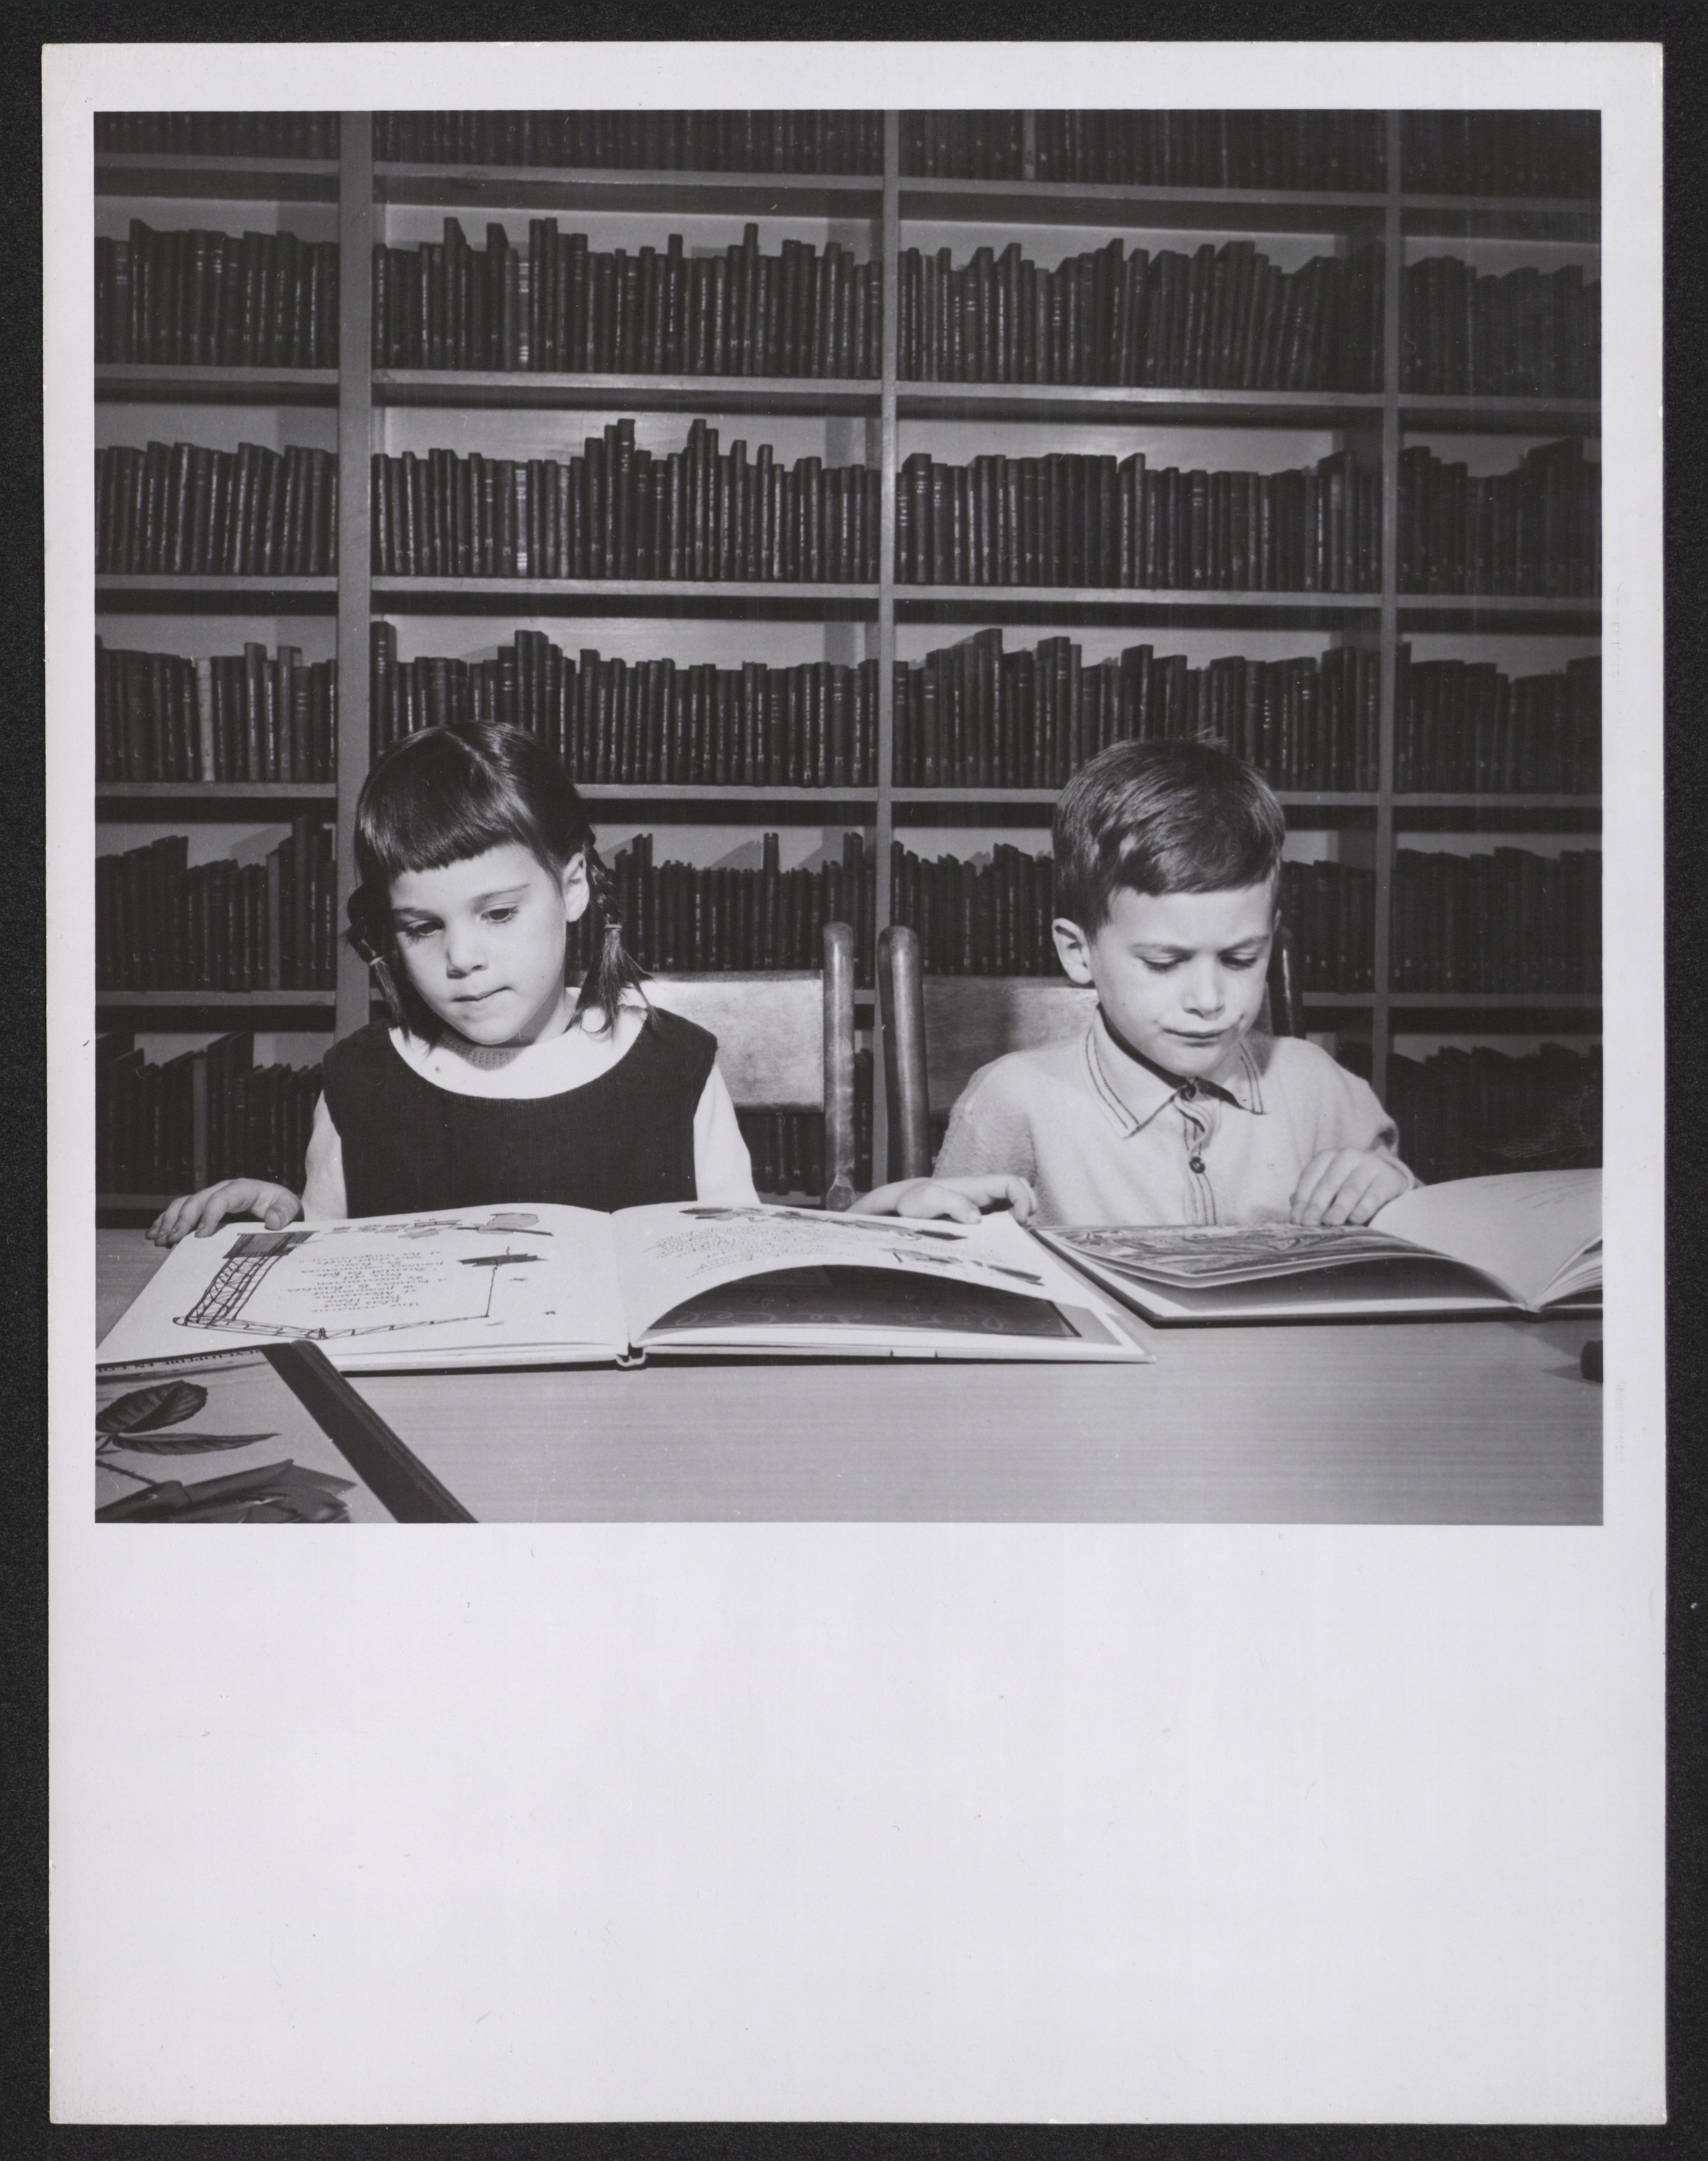 Un garçon et une fille lisent respectivement un livre, assis à une table à la bibliothèque.